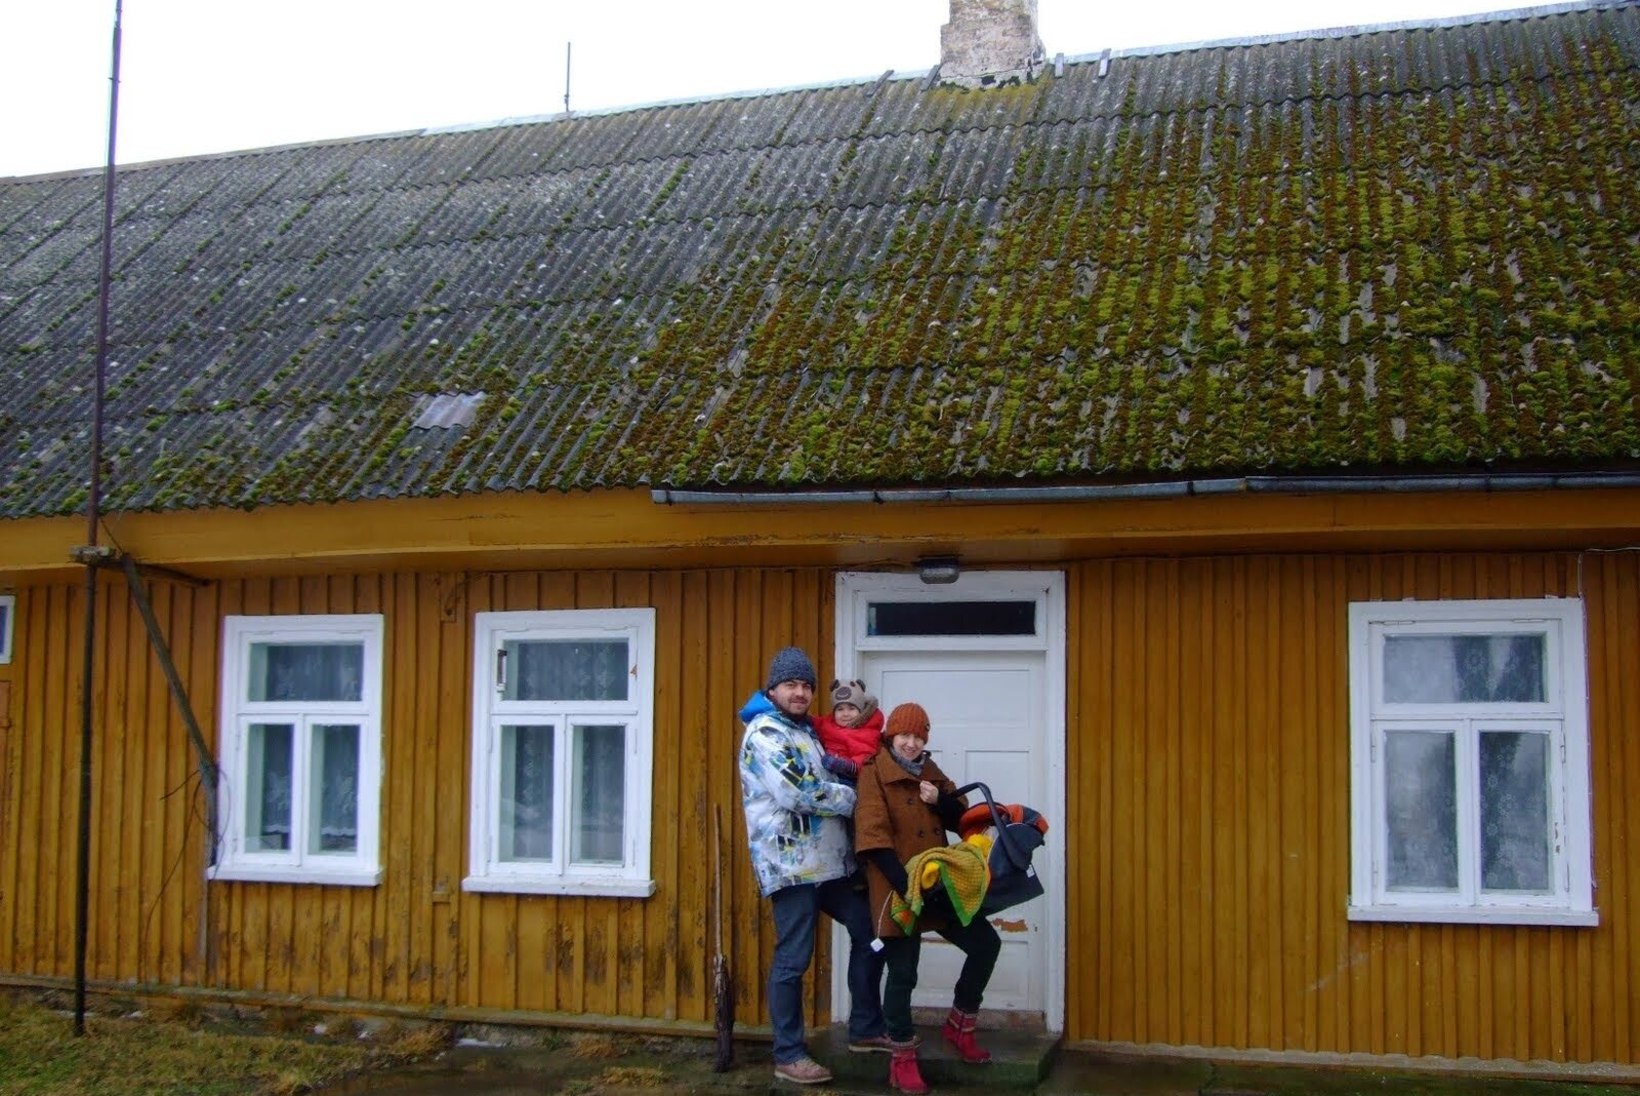 MIS SEE KÕIK MAKSAB? Pealinnast Saaremaale talu soetanud pere: „Meil ei ole kõik klants, vaid kodune.“